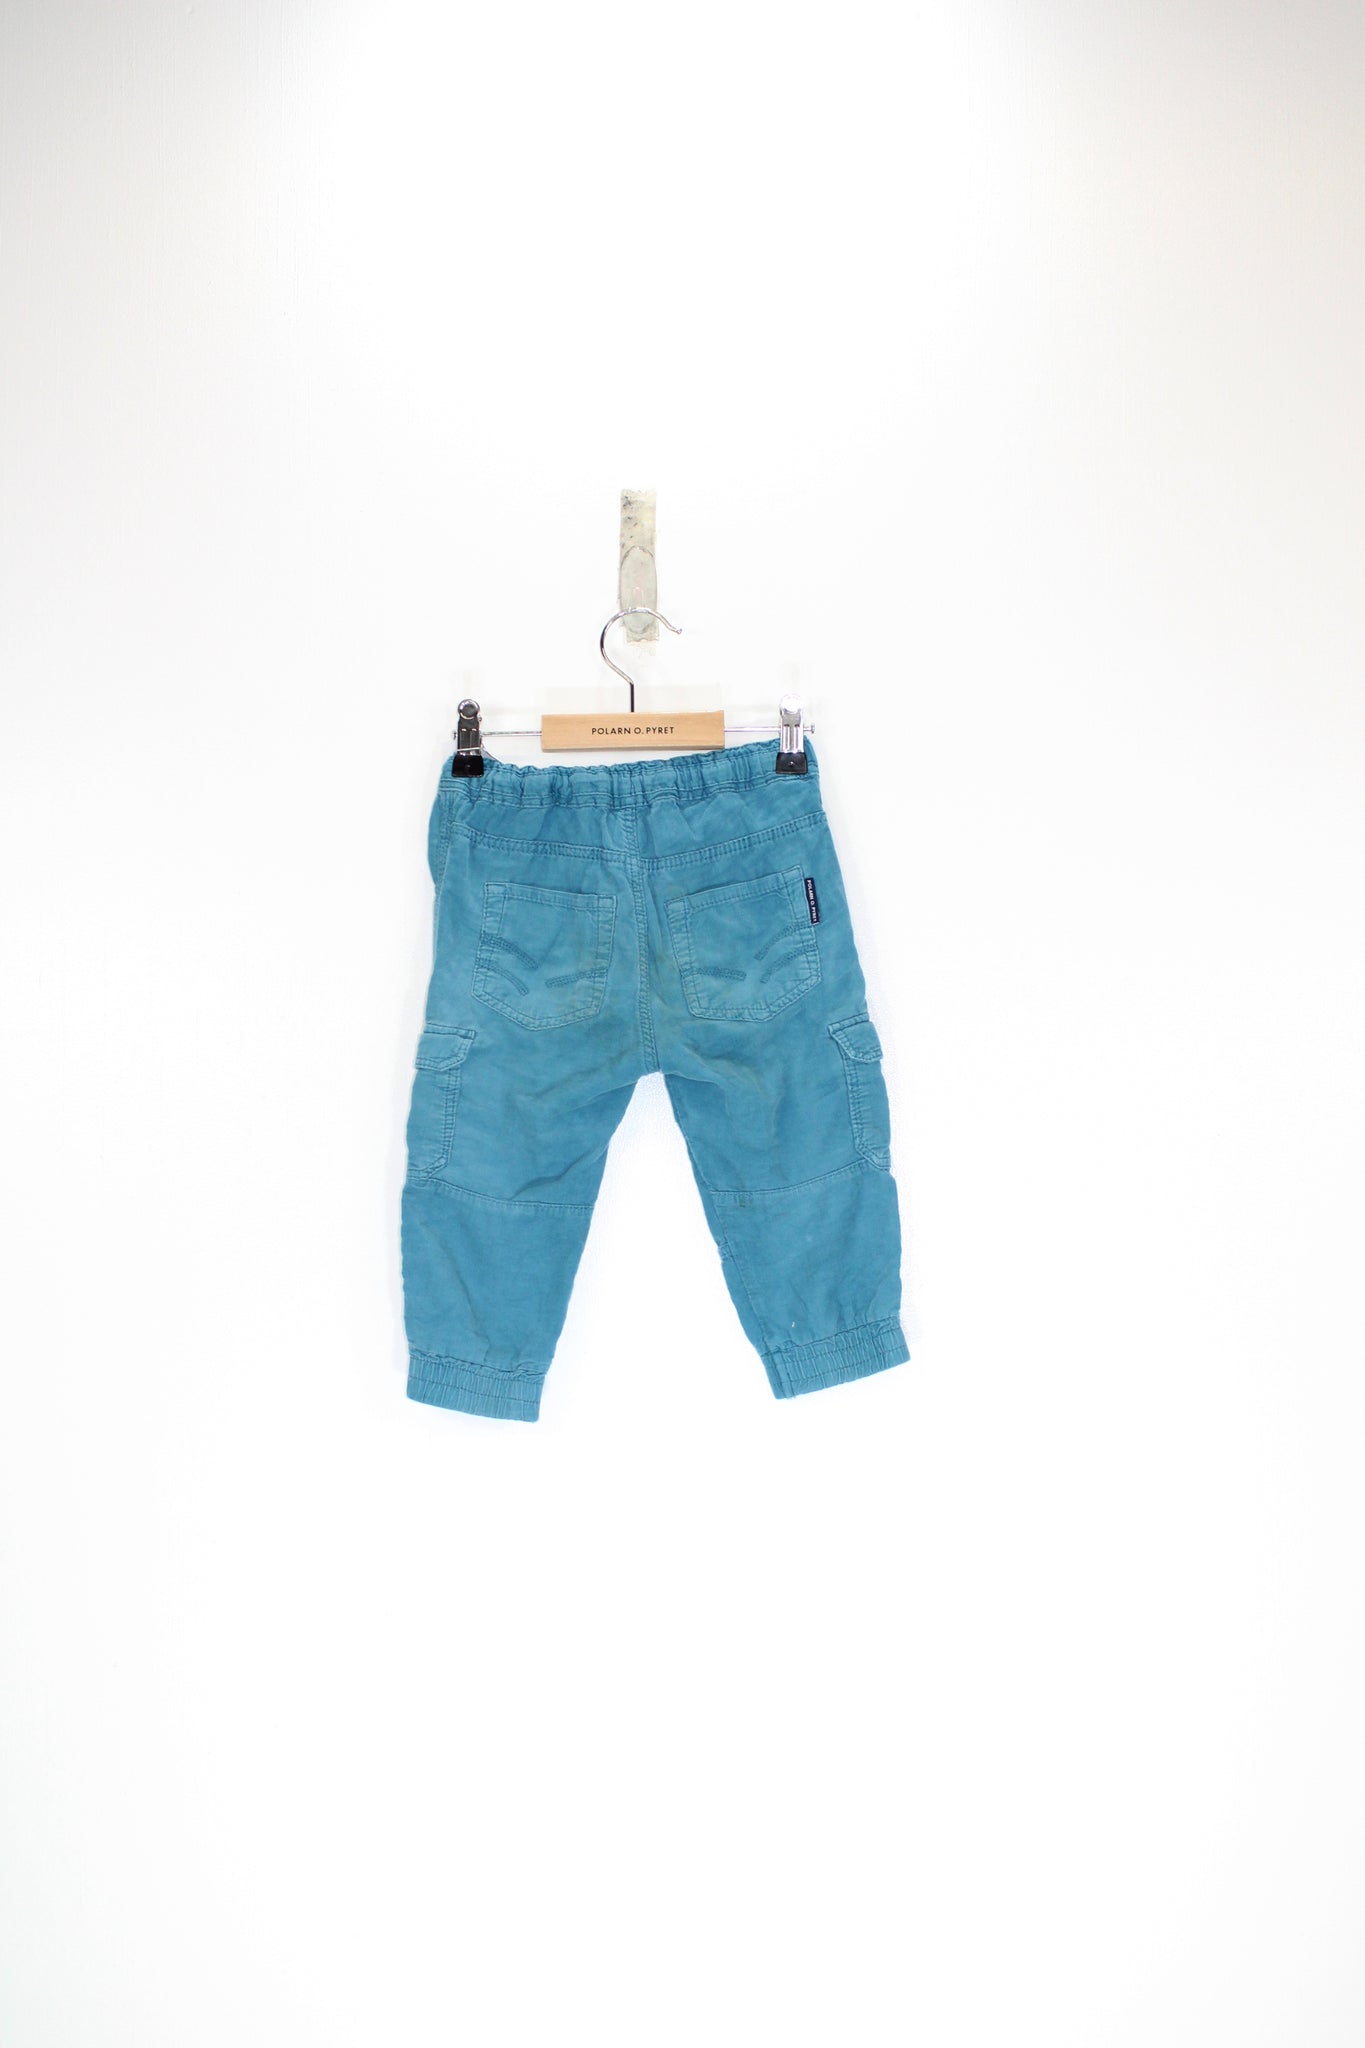 Kids Cargo Trousers 1-1.5y / 86